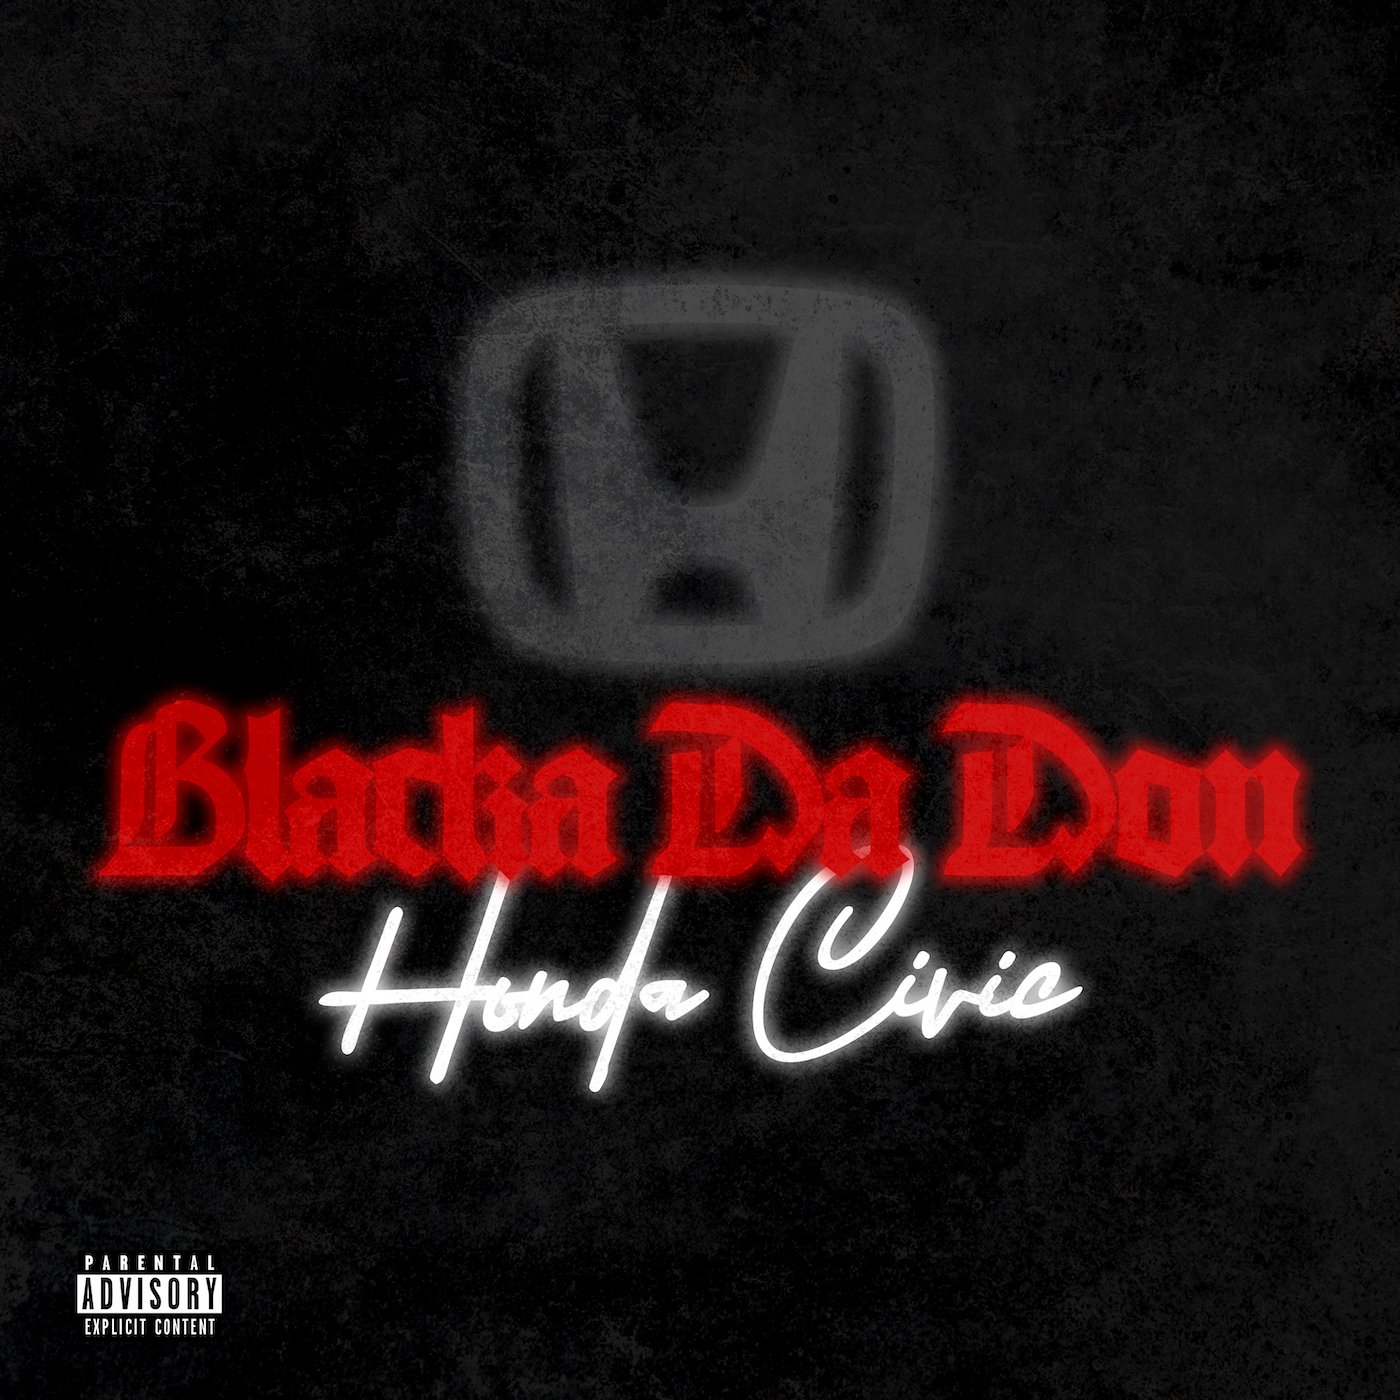 Honda Civic by Black Da Don